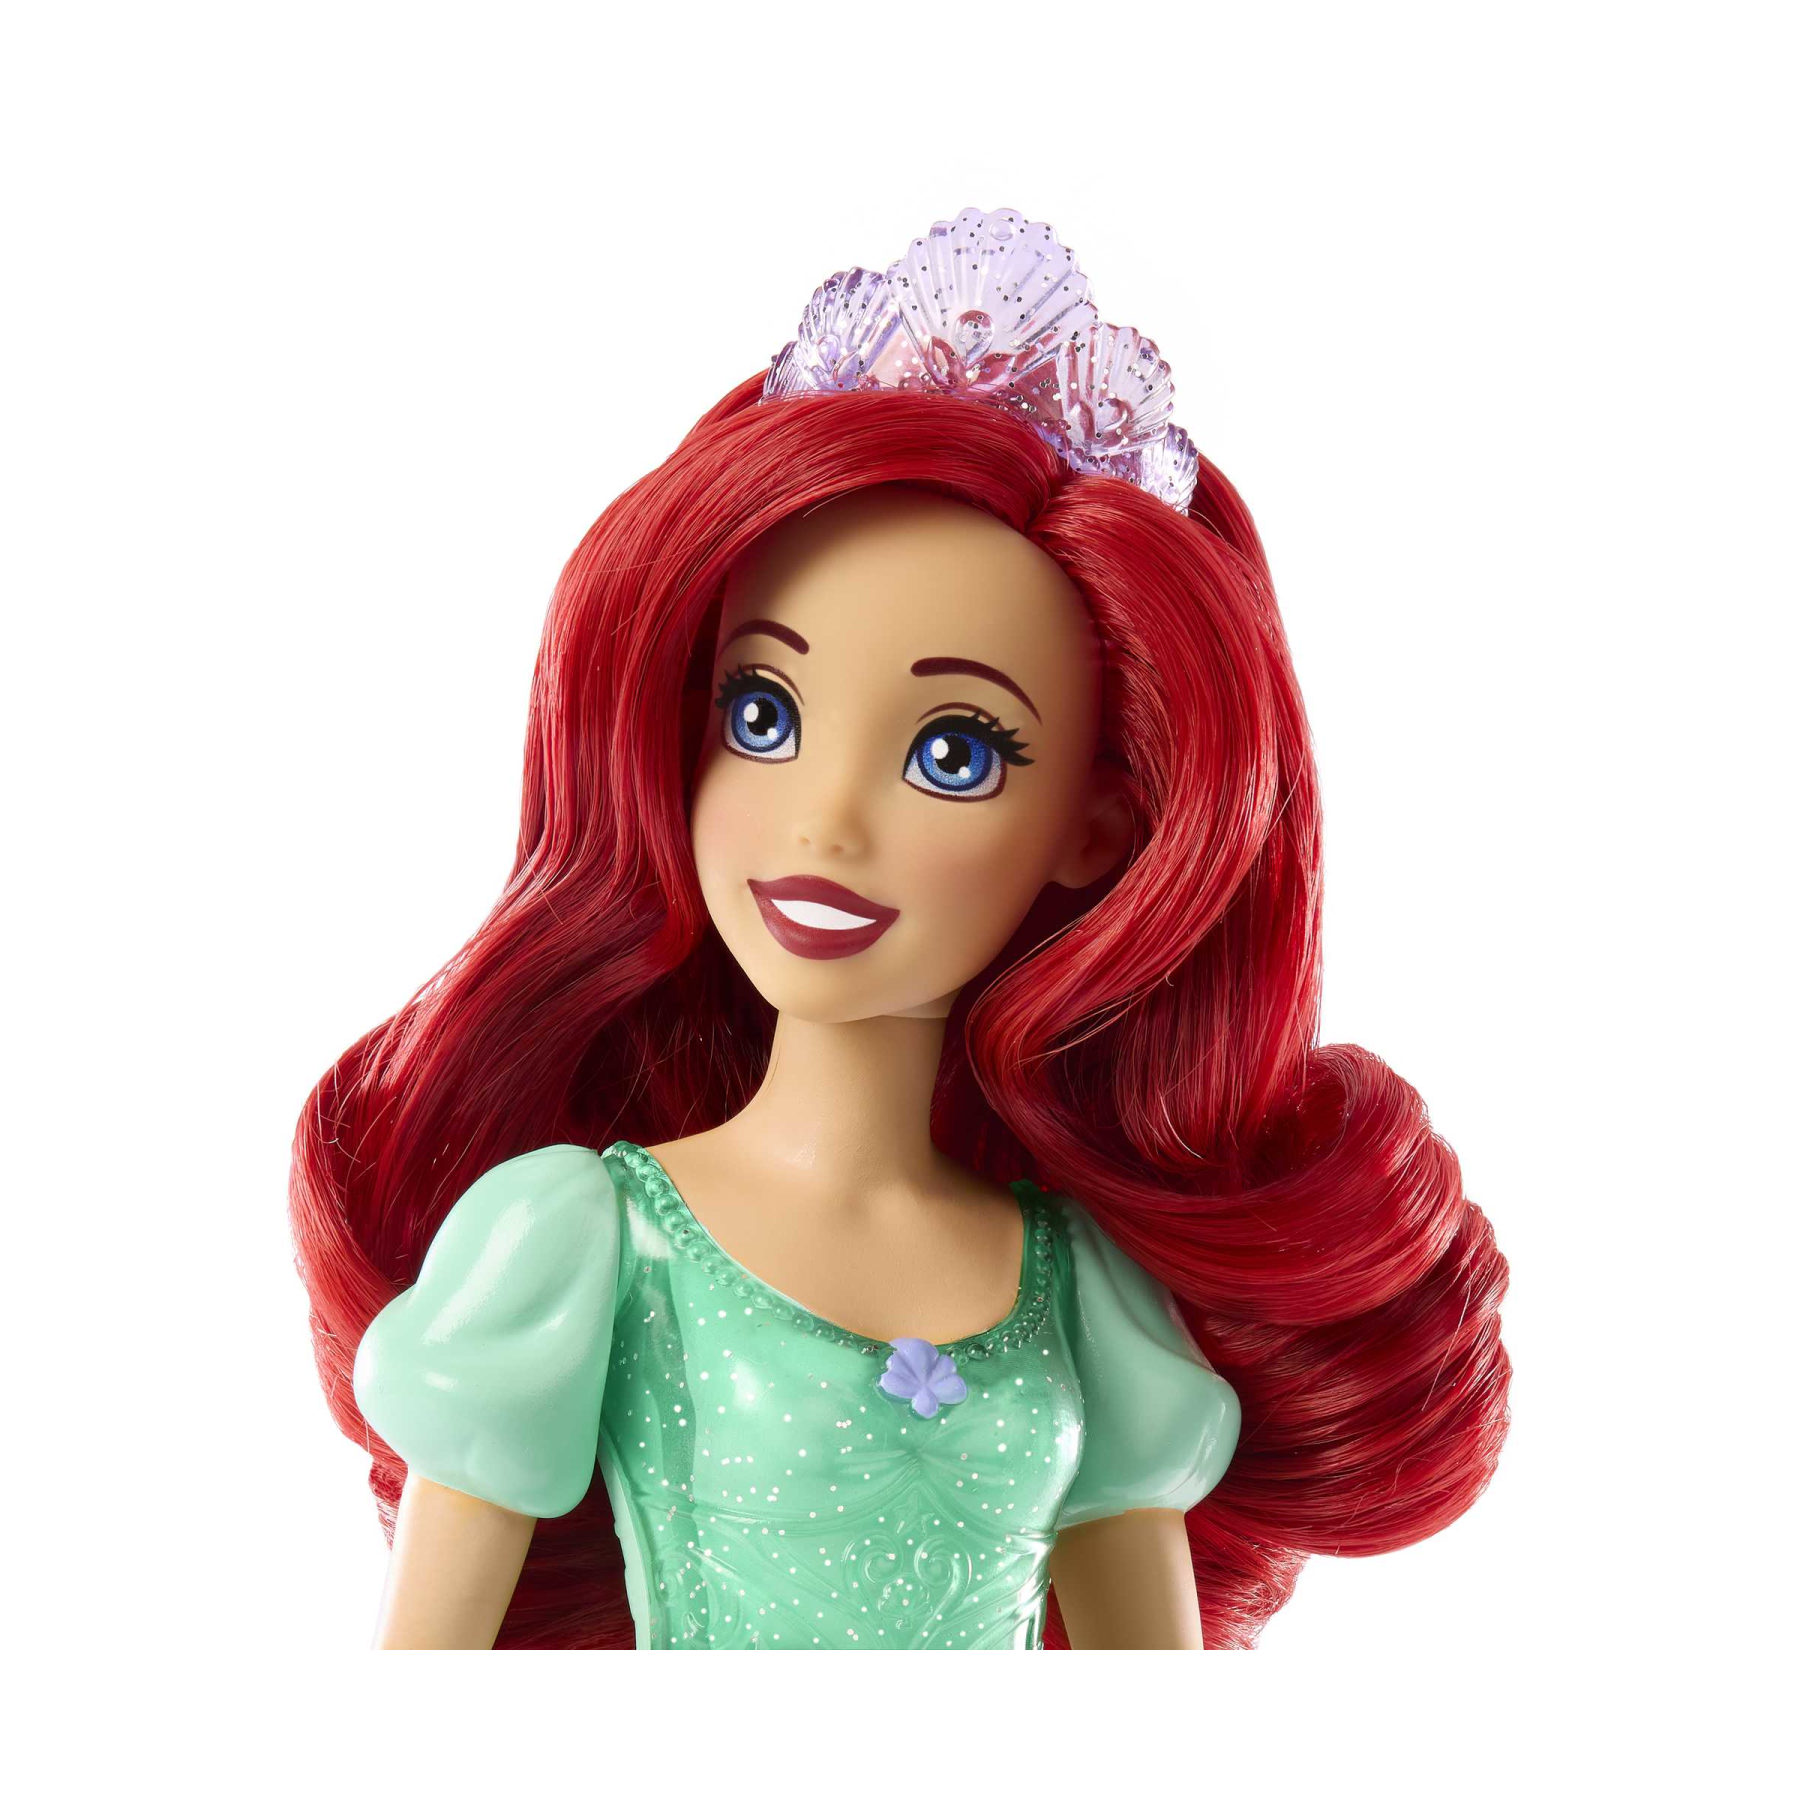 Disney princess - ariel bambola snodata, con capi e accessori scintillanti ispirati al film disney, giocattolo per bambini, 3+ anni, hlw10 - DISNEY PRINCESS